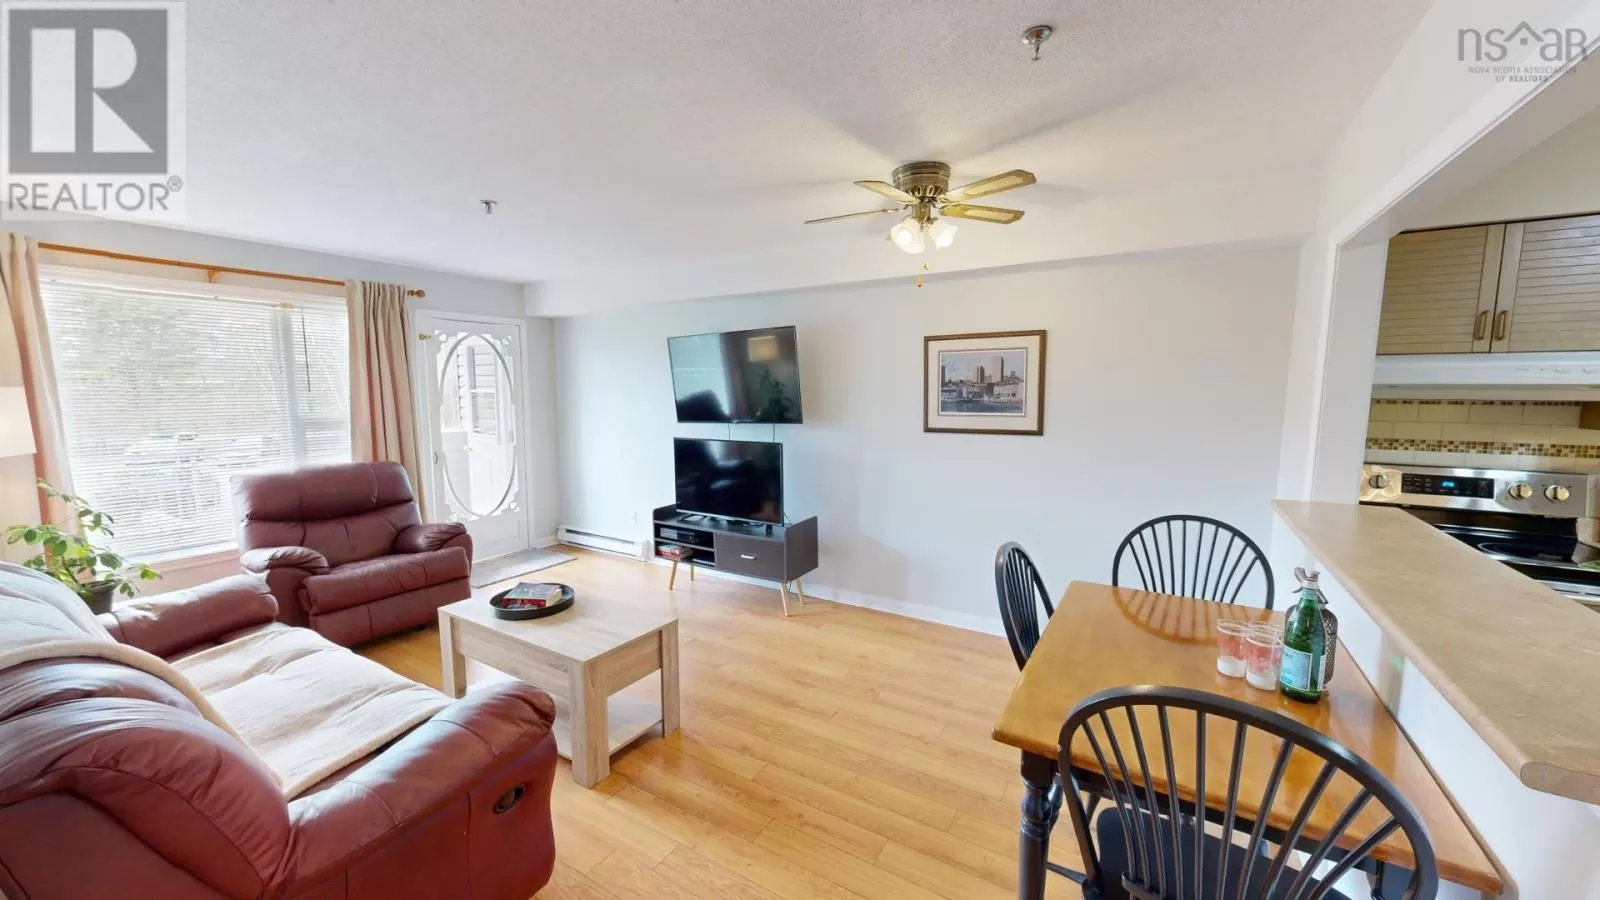 Apartment for rent: 208 31 River Lane, Bedford, Nova Scotia B4A 3Y7